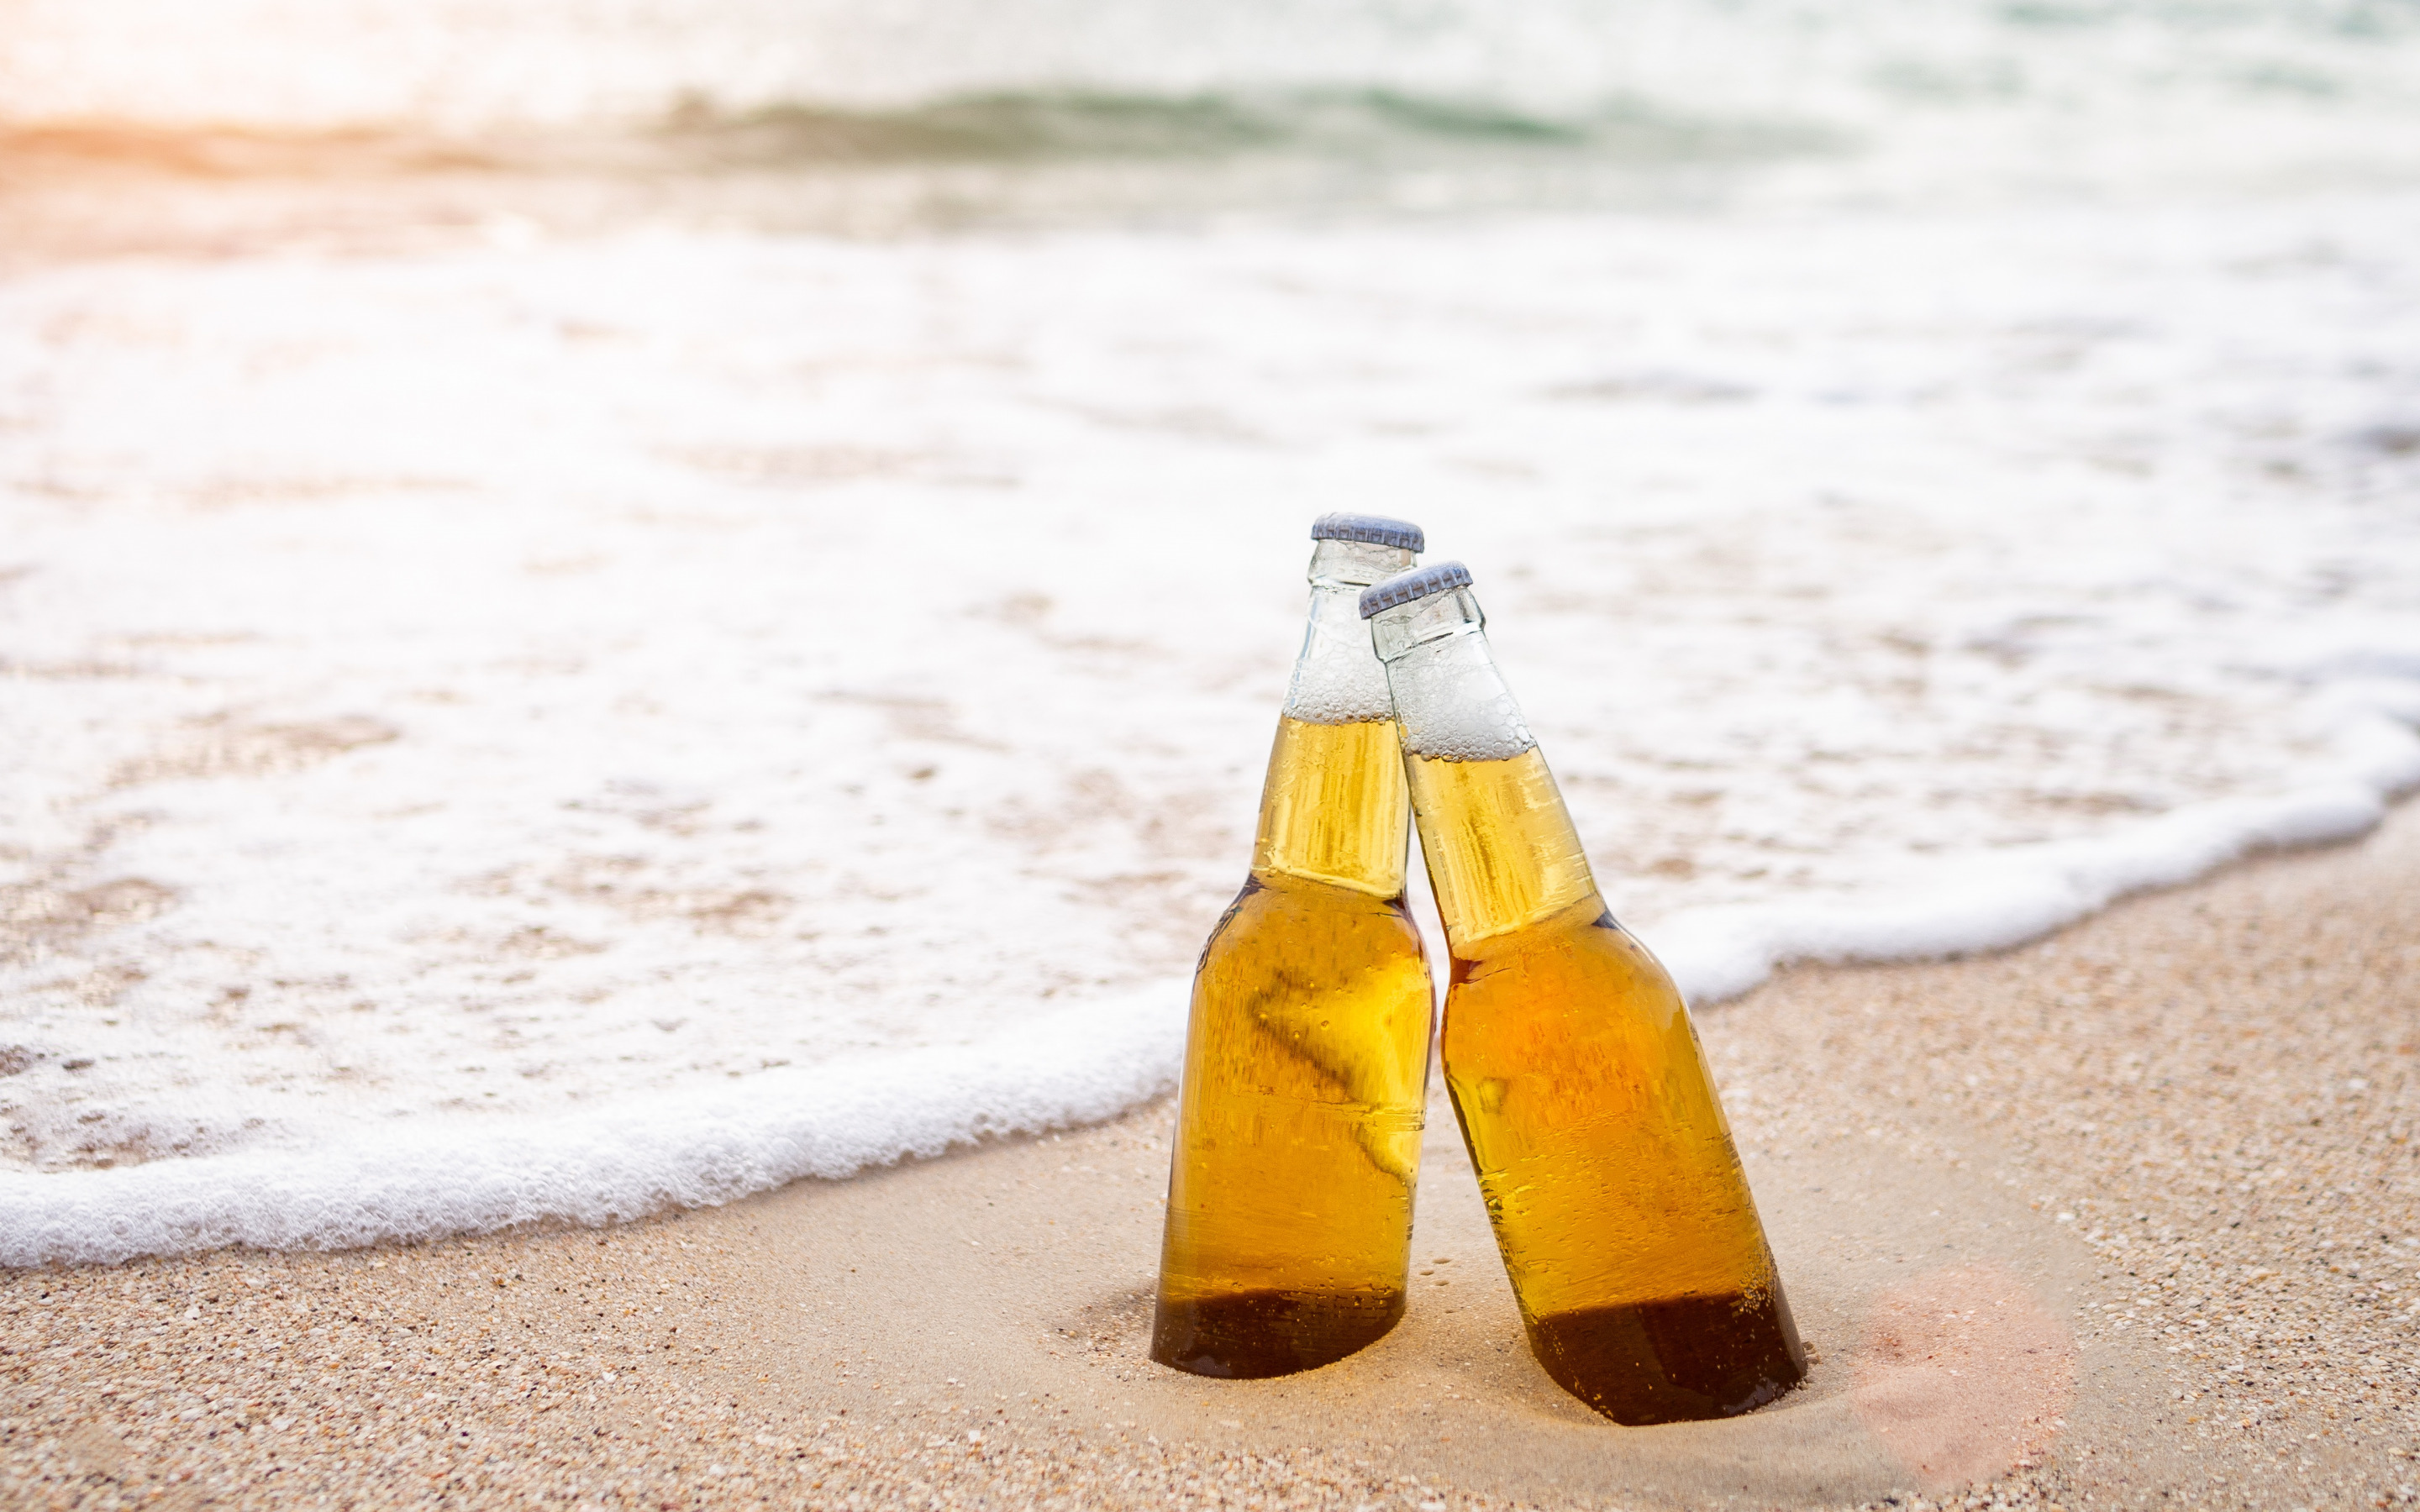 2880х1800, бутылки, пиво, море, пляж, волны, песок, отдых, лето, bottles, beer, sea, beach, waves, sand, vacation, summer